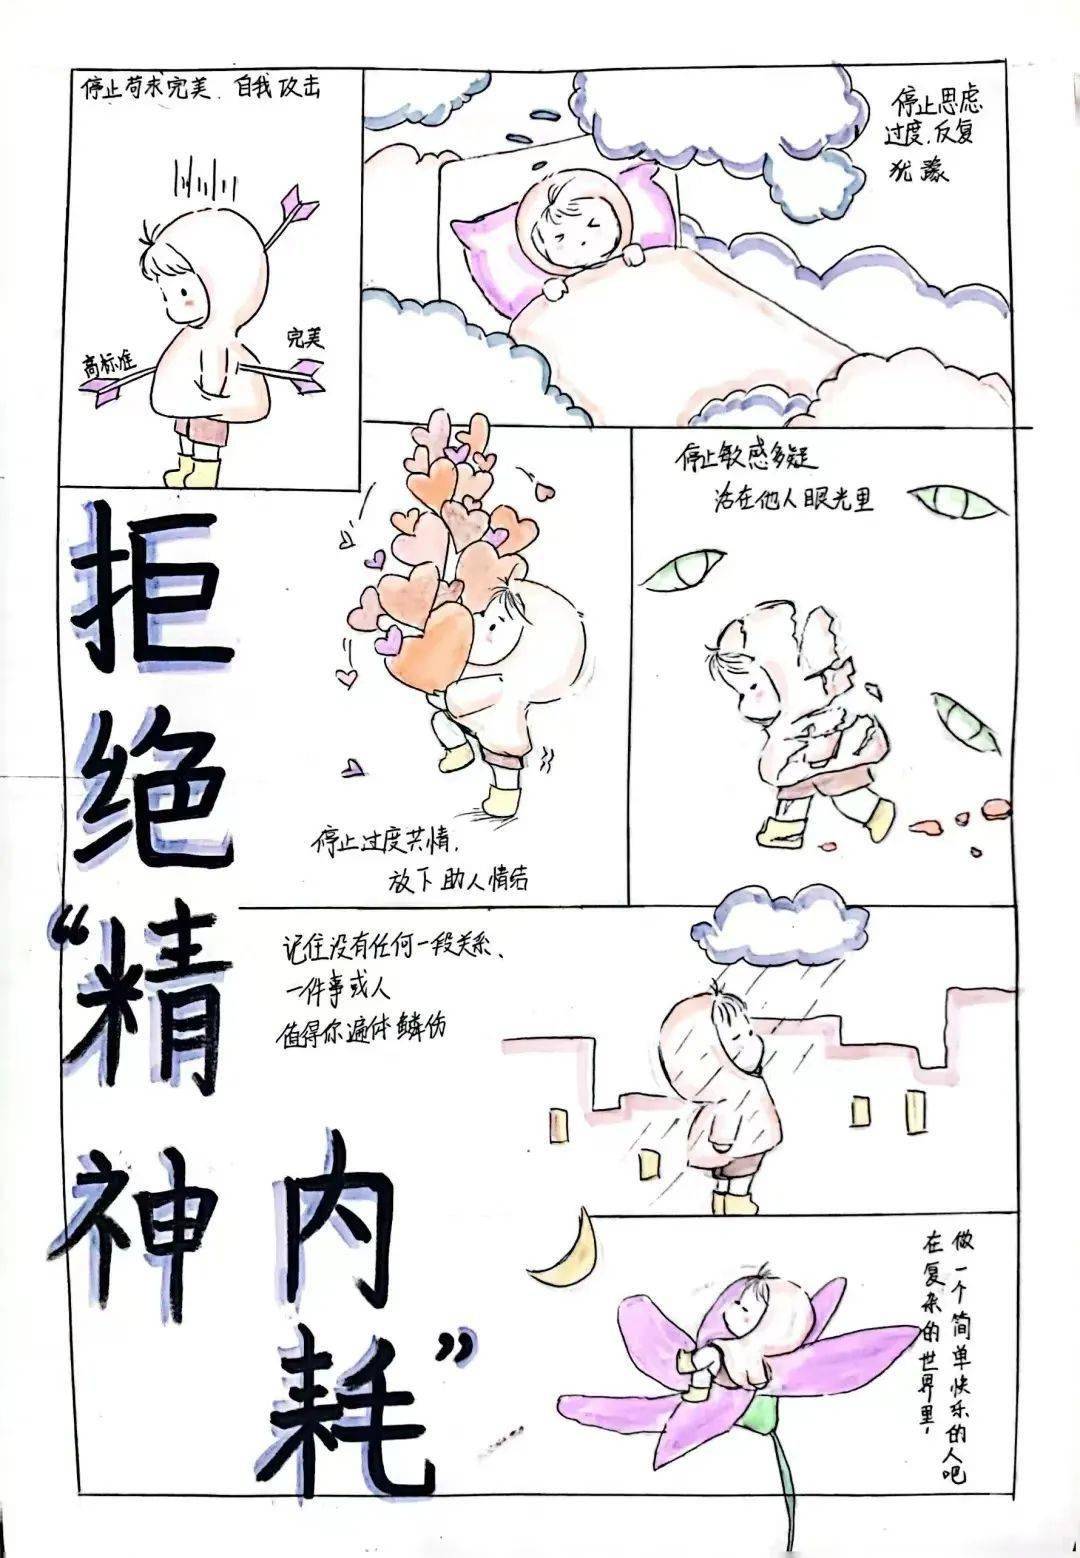 第一届心悦农大杯心理漫画大赛04活动概述:龙子湖校区心理健康教育